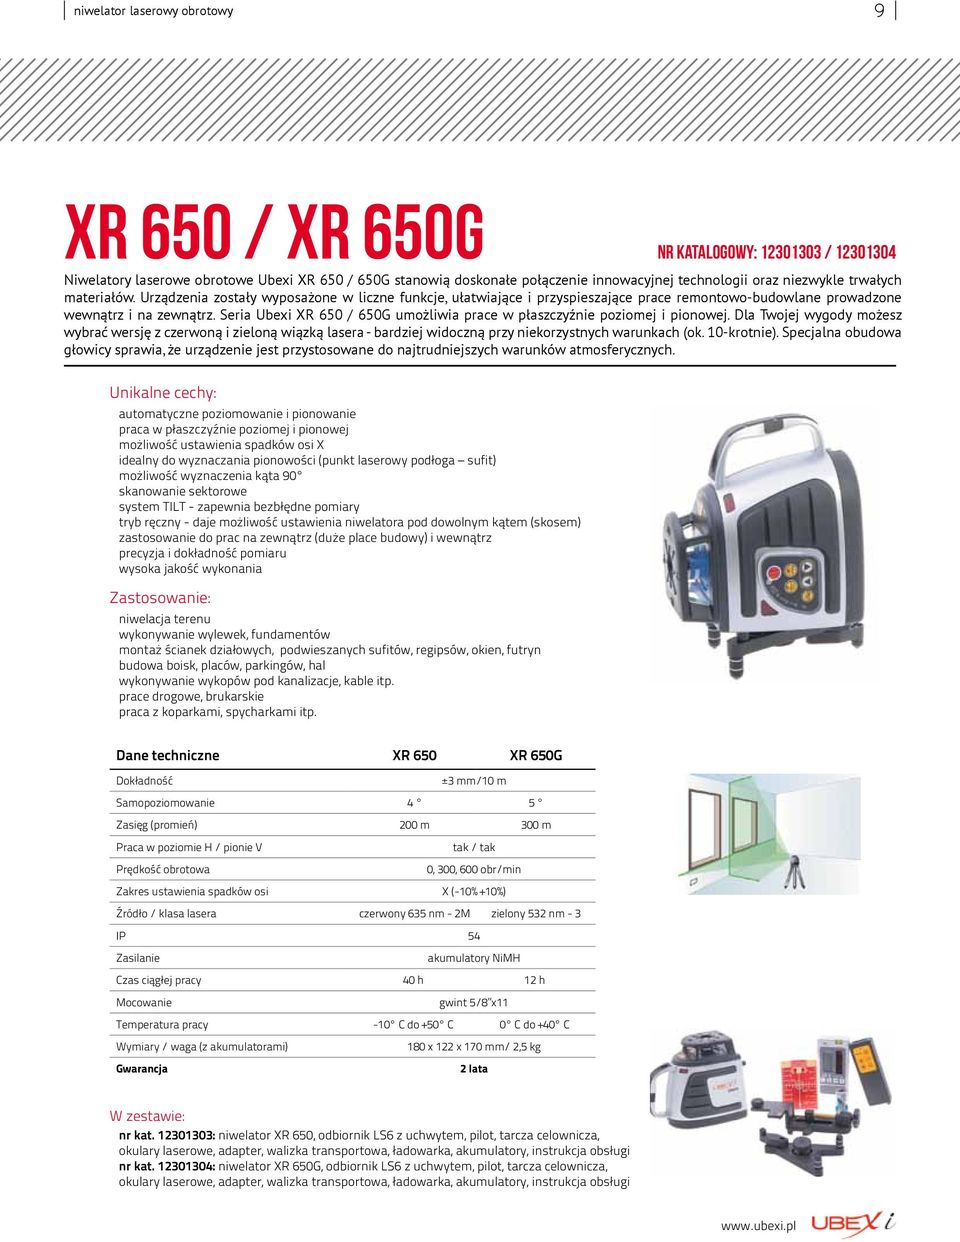 Seria Ubexi XR 650 / 650G umożliwia prace w płaszczyźnie poziomej i pionowej.